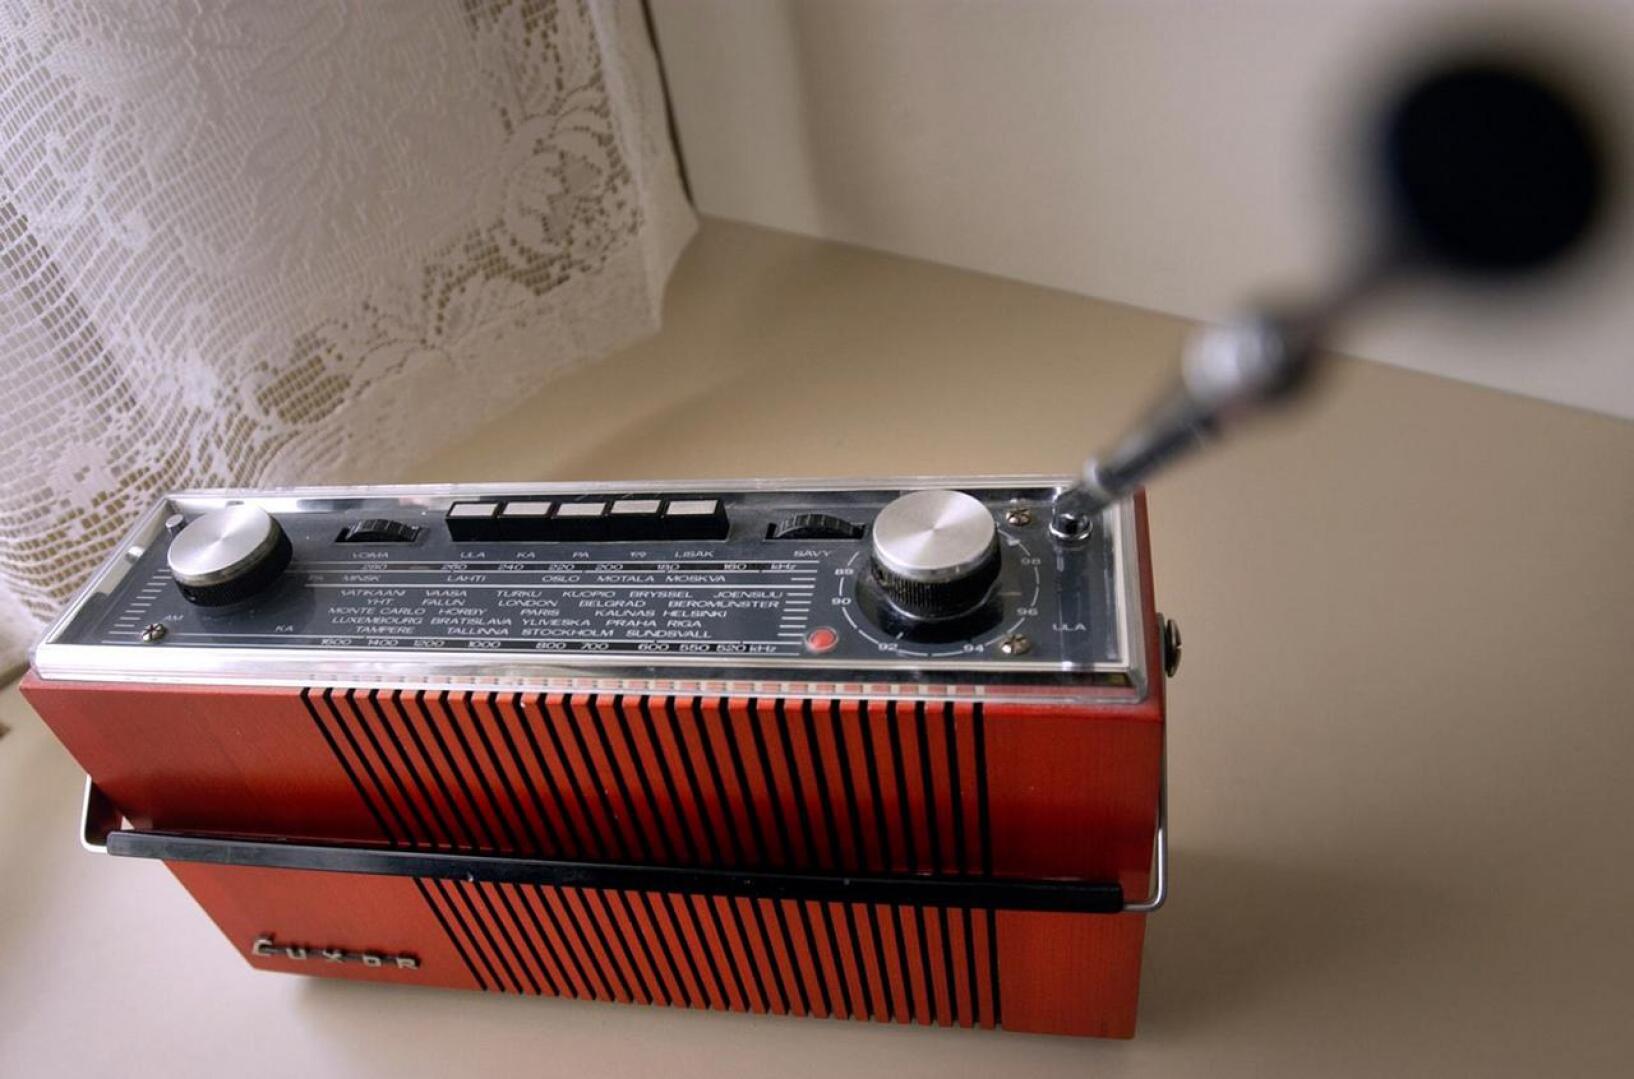 Ennen vanhaan radio oli kestoltaan lähes ikuinen. Tämän päivän tekniikka ja standartit muuttuvat tiuhaan. Monen laitteen käyttöikä on myös lyhentynyt.    